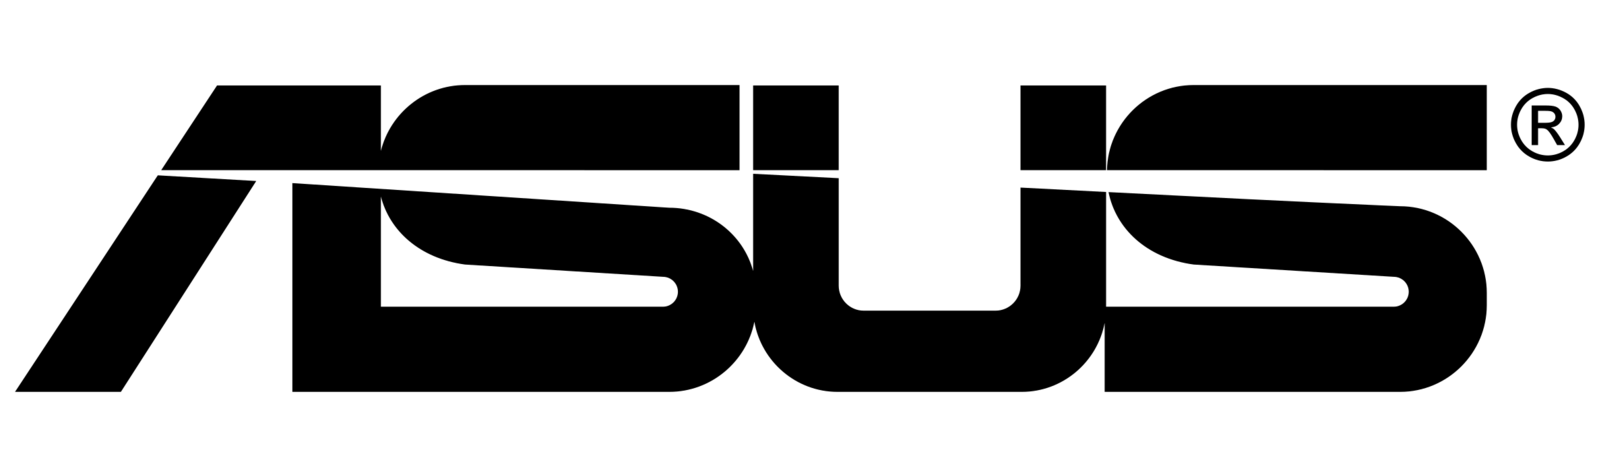 1599px-AsusTek-black-logo